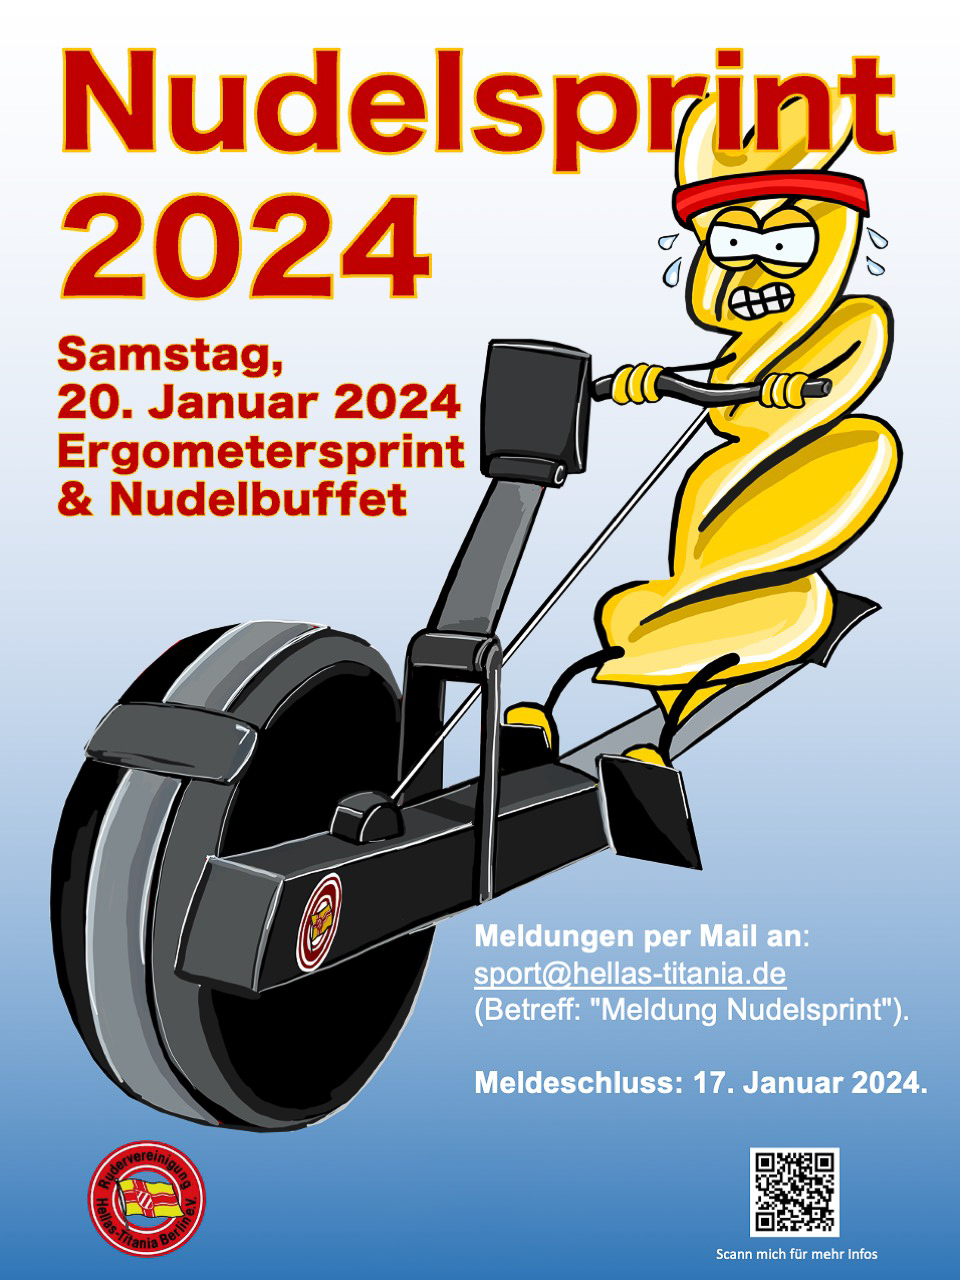 Nudelsprint 2024